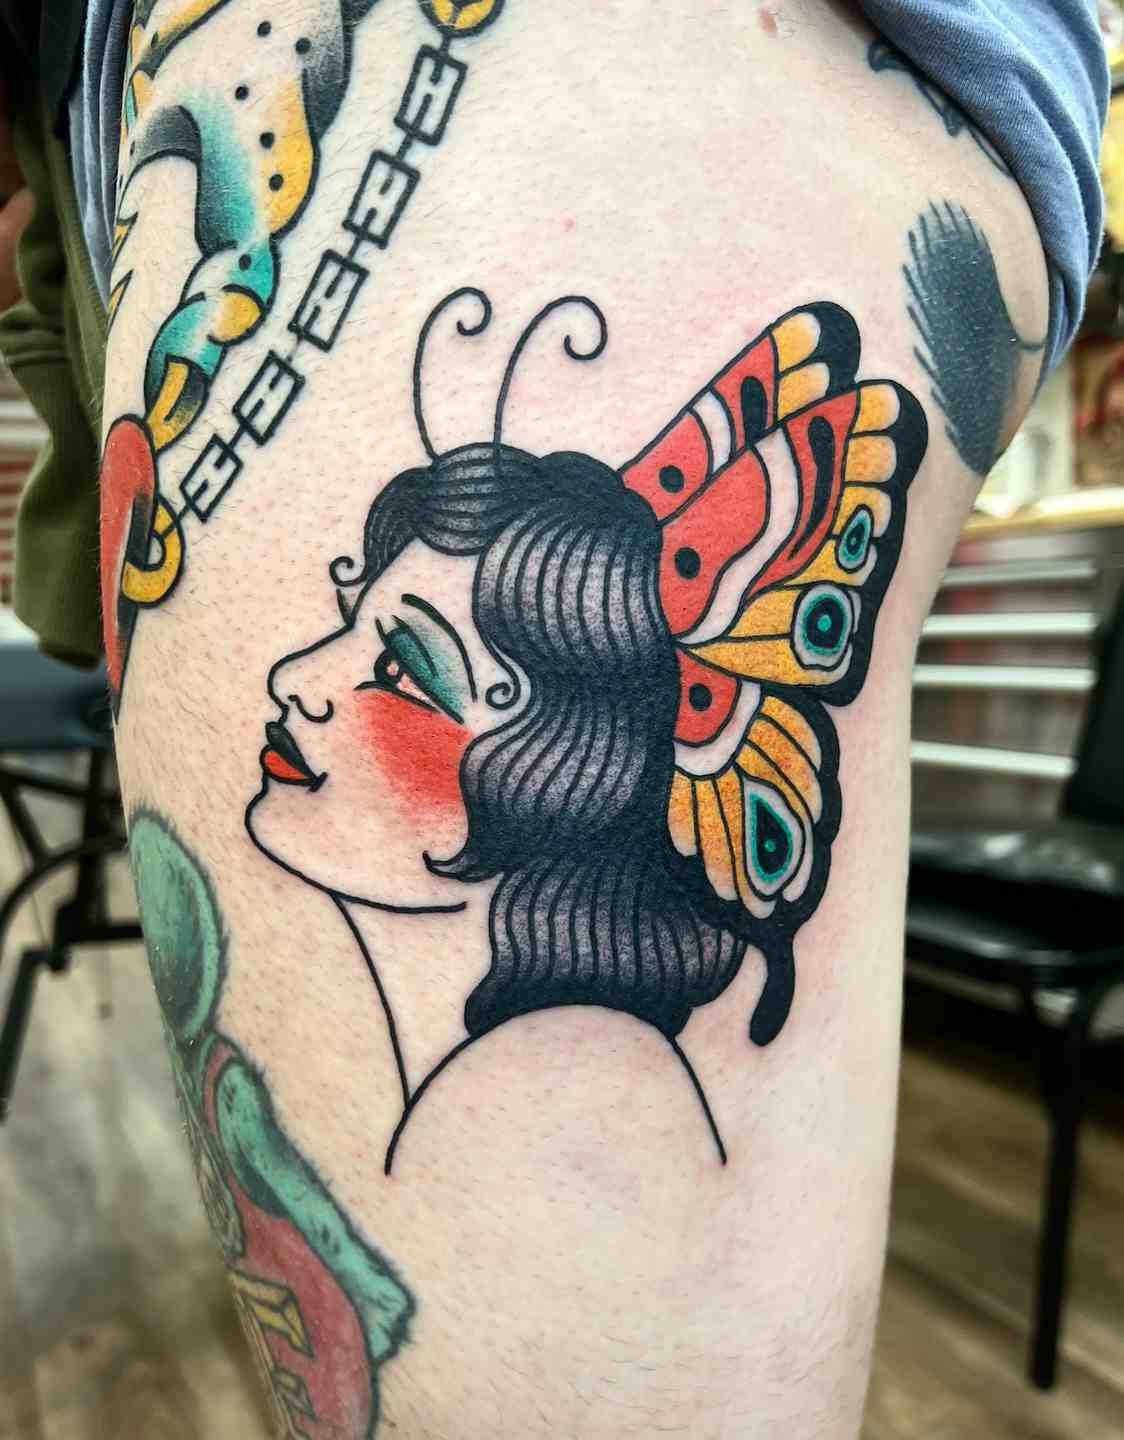 Butterfly girl head tattoo